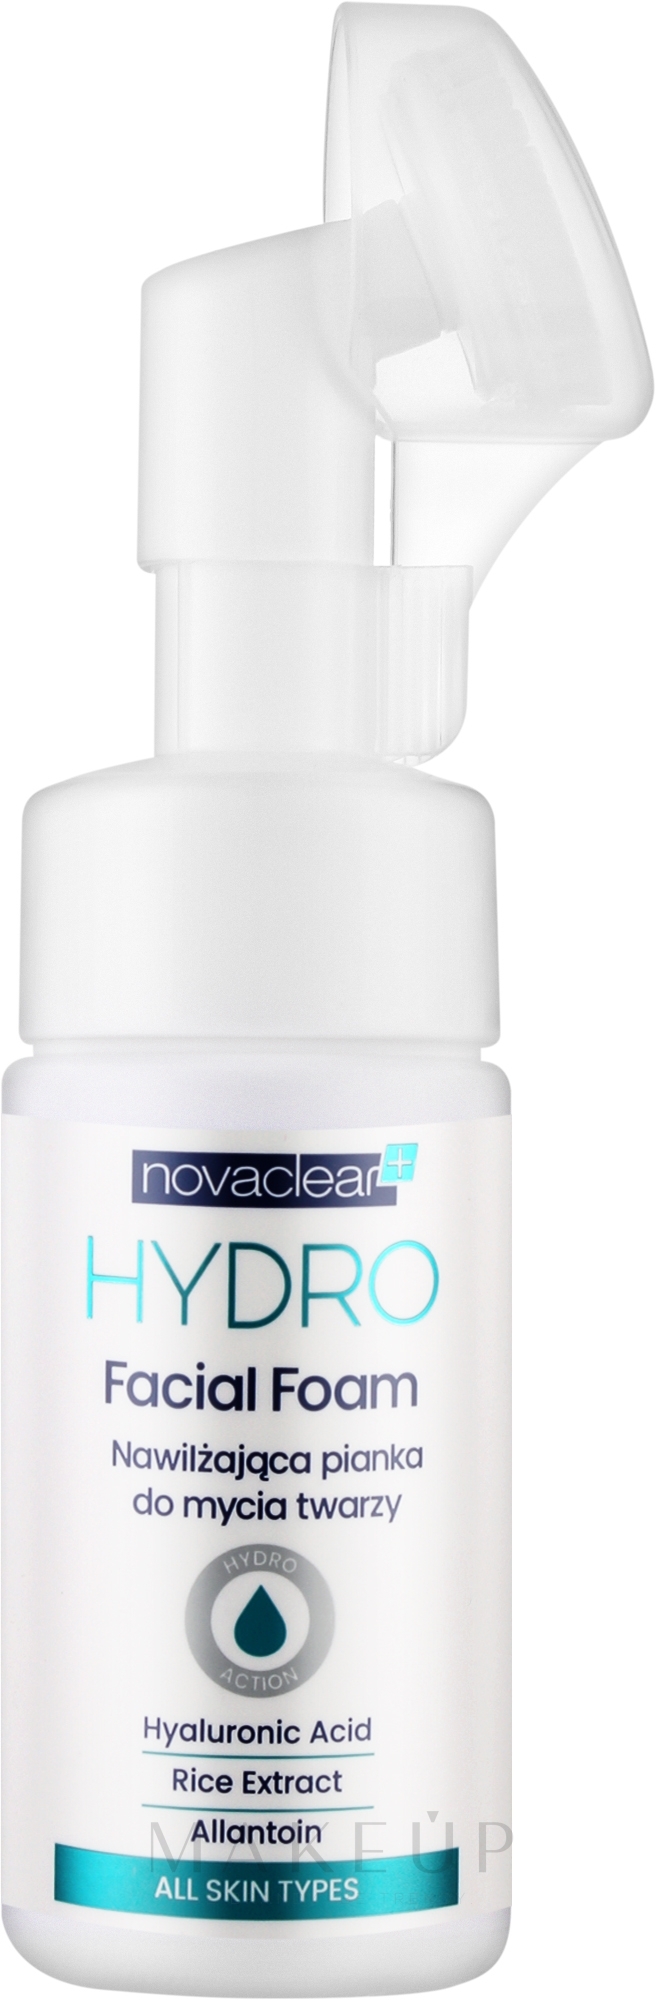 Feuchtigkeitsspendender Gesichtswaschschaum mit Hyaluronsäure, Reisextrakt und Allantoin - Novaclear Hydro Facial Foam — Bild 100 ml